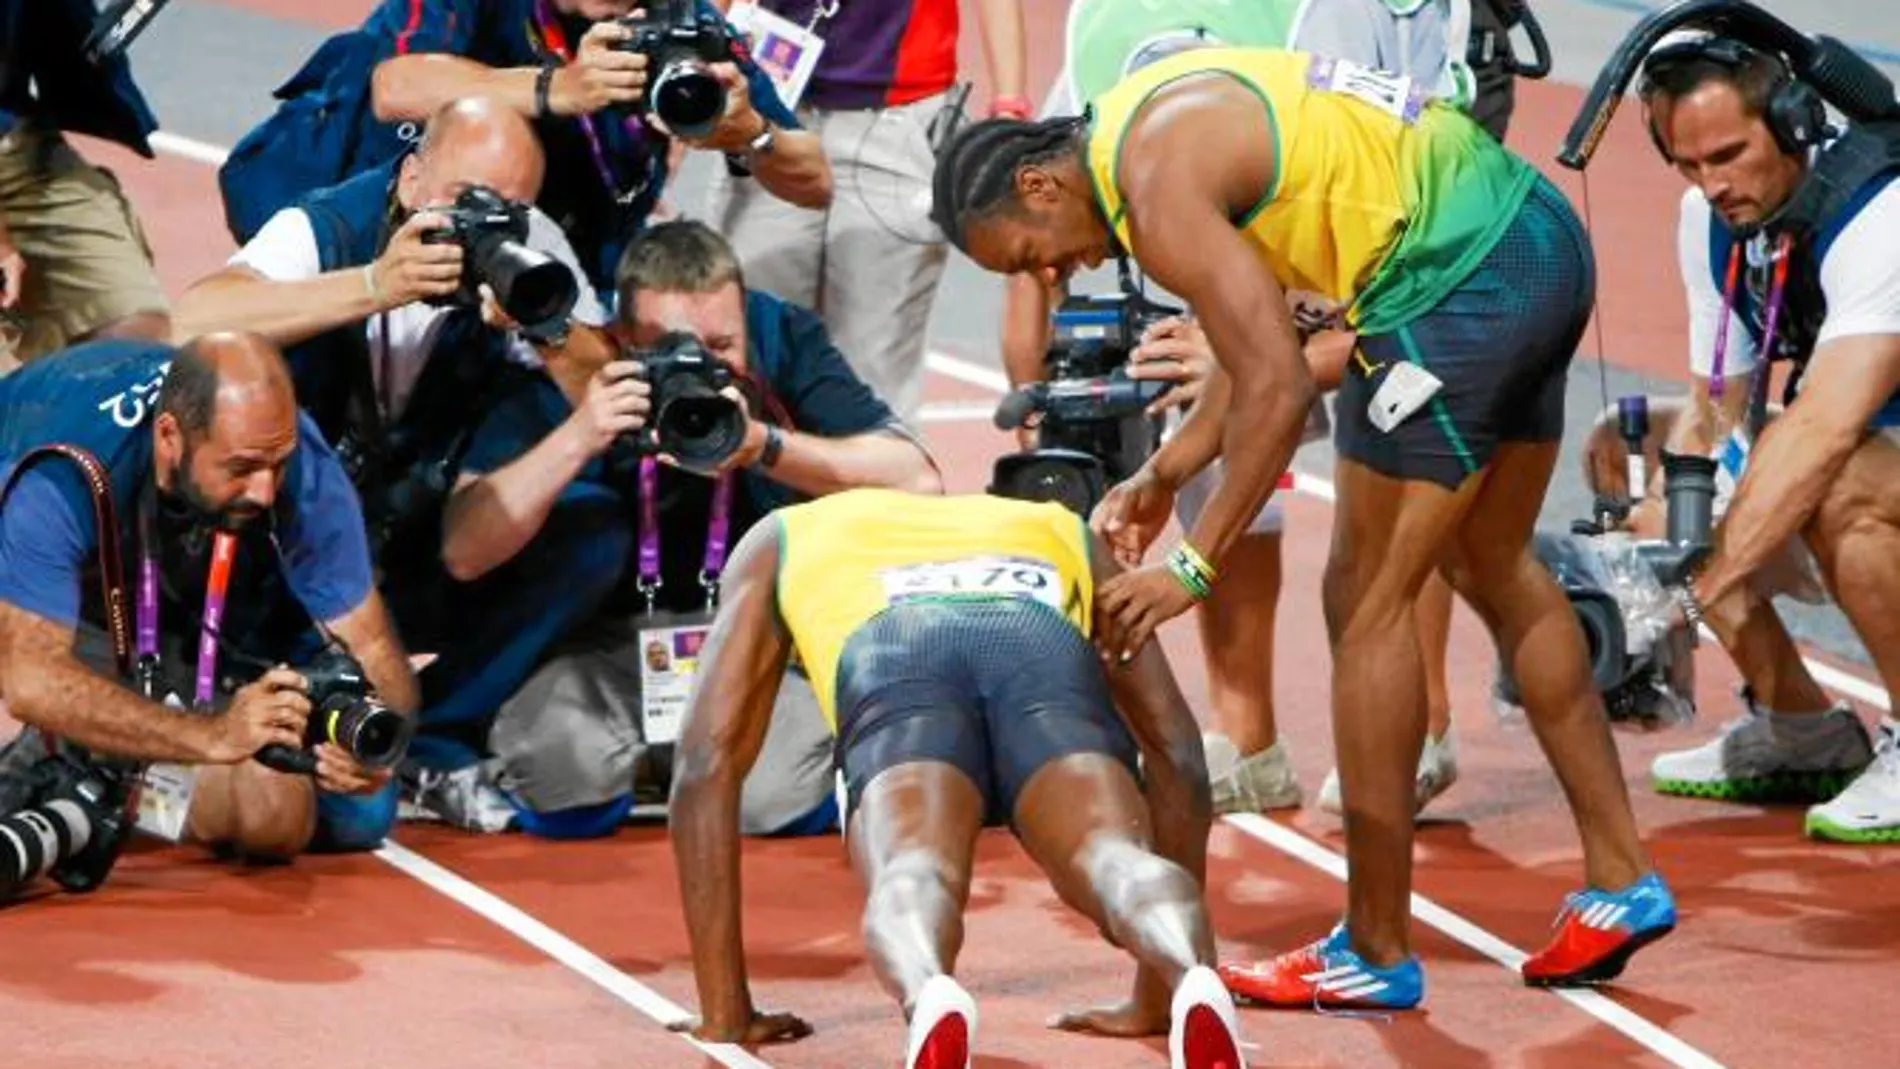 Bolt se impuso con mucha comodidad en su semifinal de 200